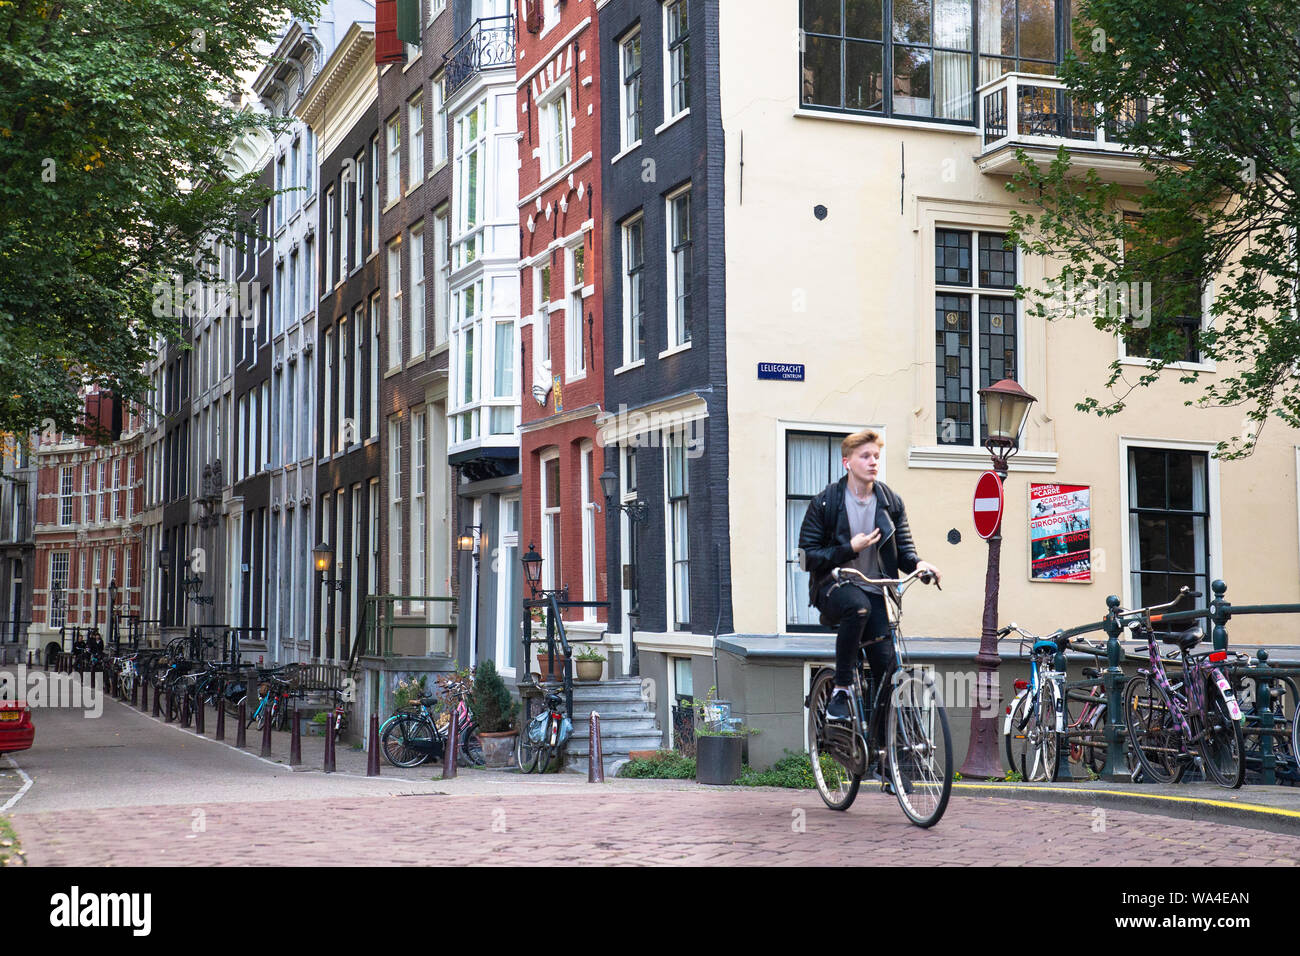 AMSTERDAM, NIEDERLANDE, 31. AUGUST 2018: Street Scene von Amsterdam an einem Sommertag mit echten Menschen und Architektur. Stockfoto